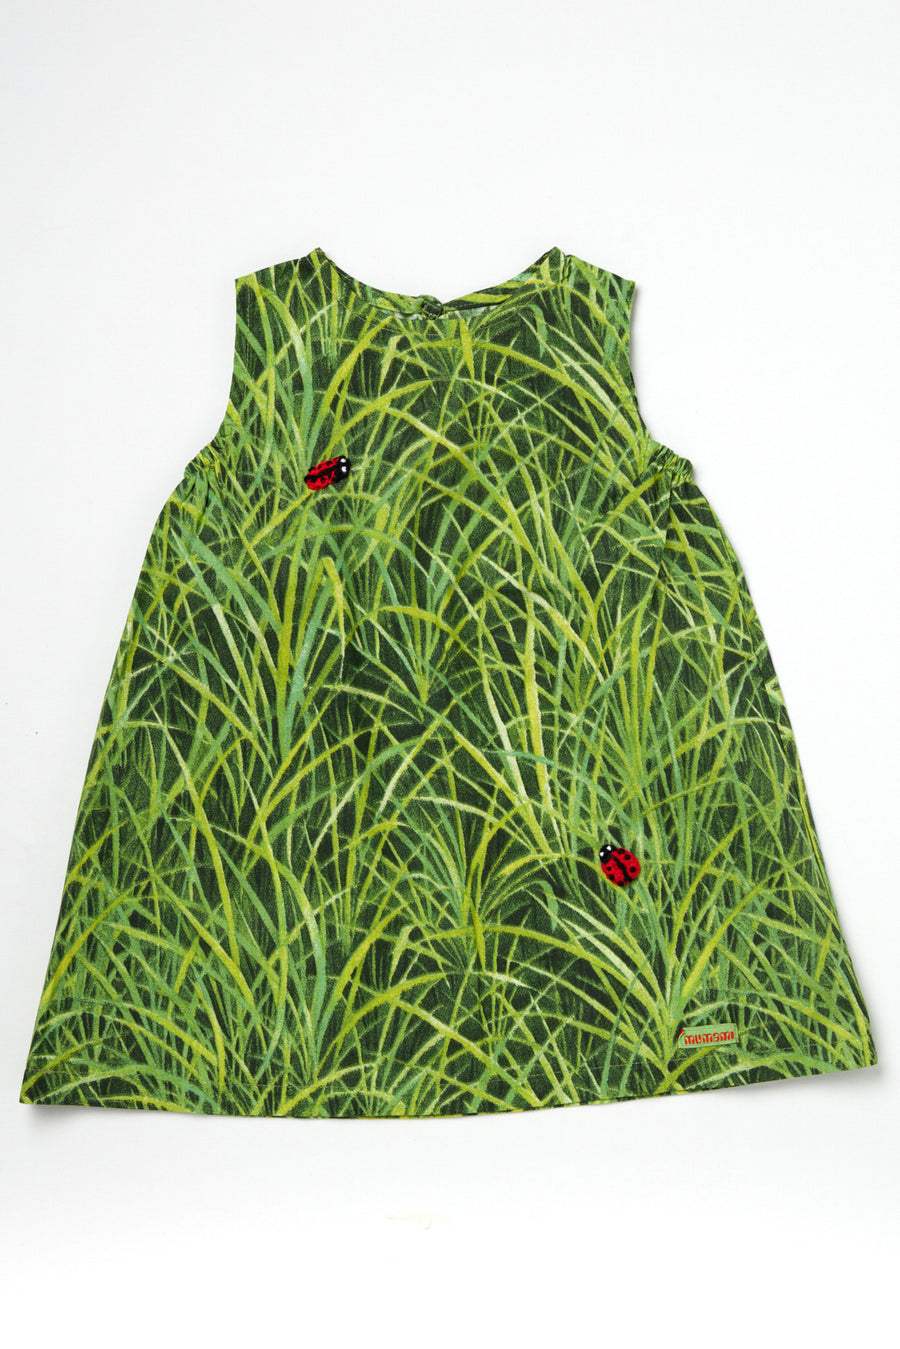 Grass Dress